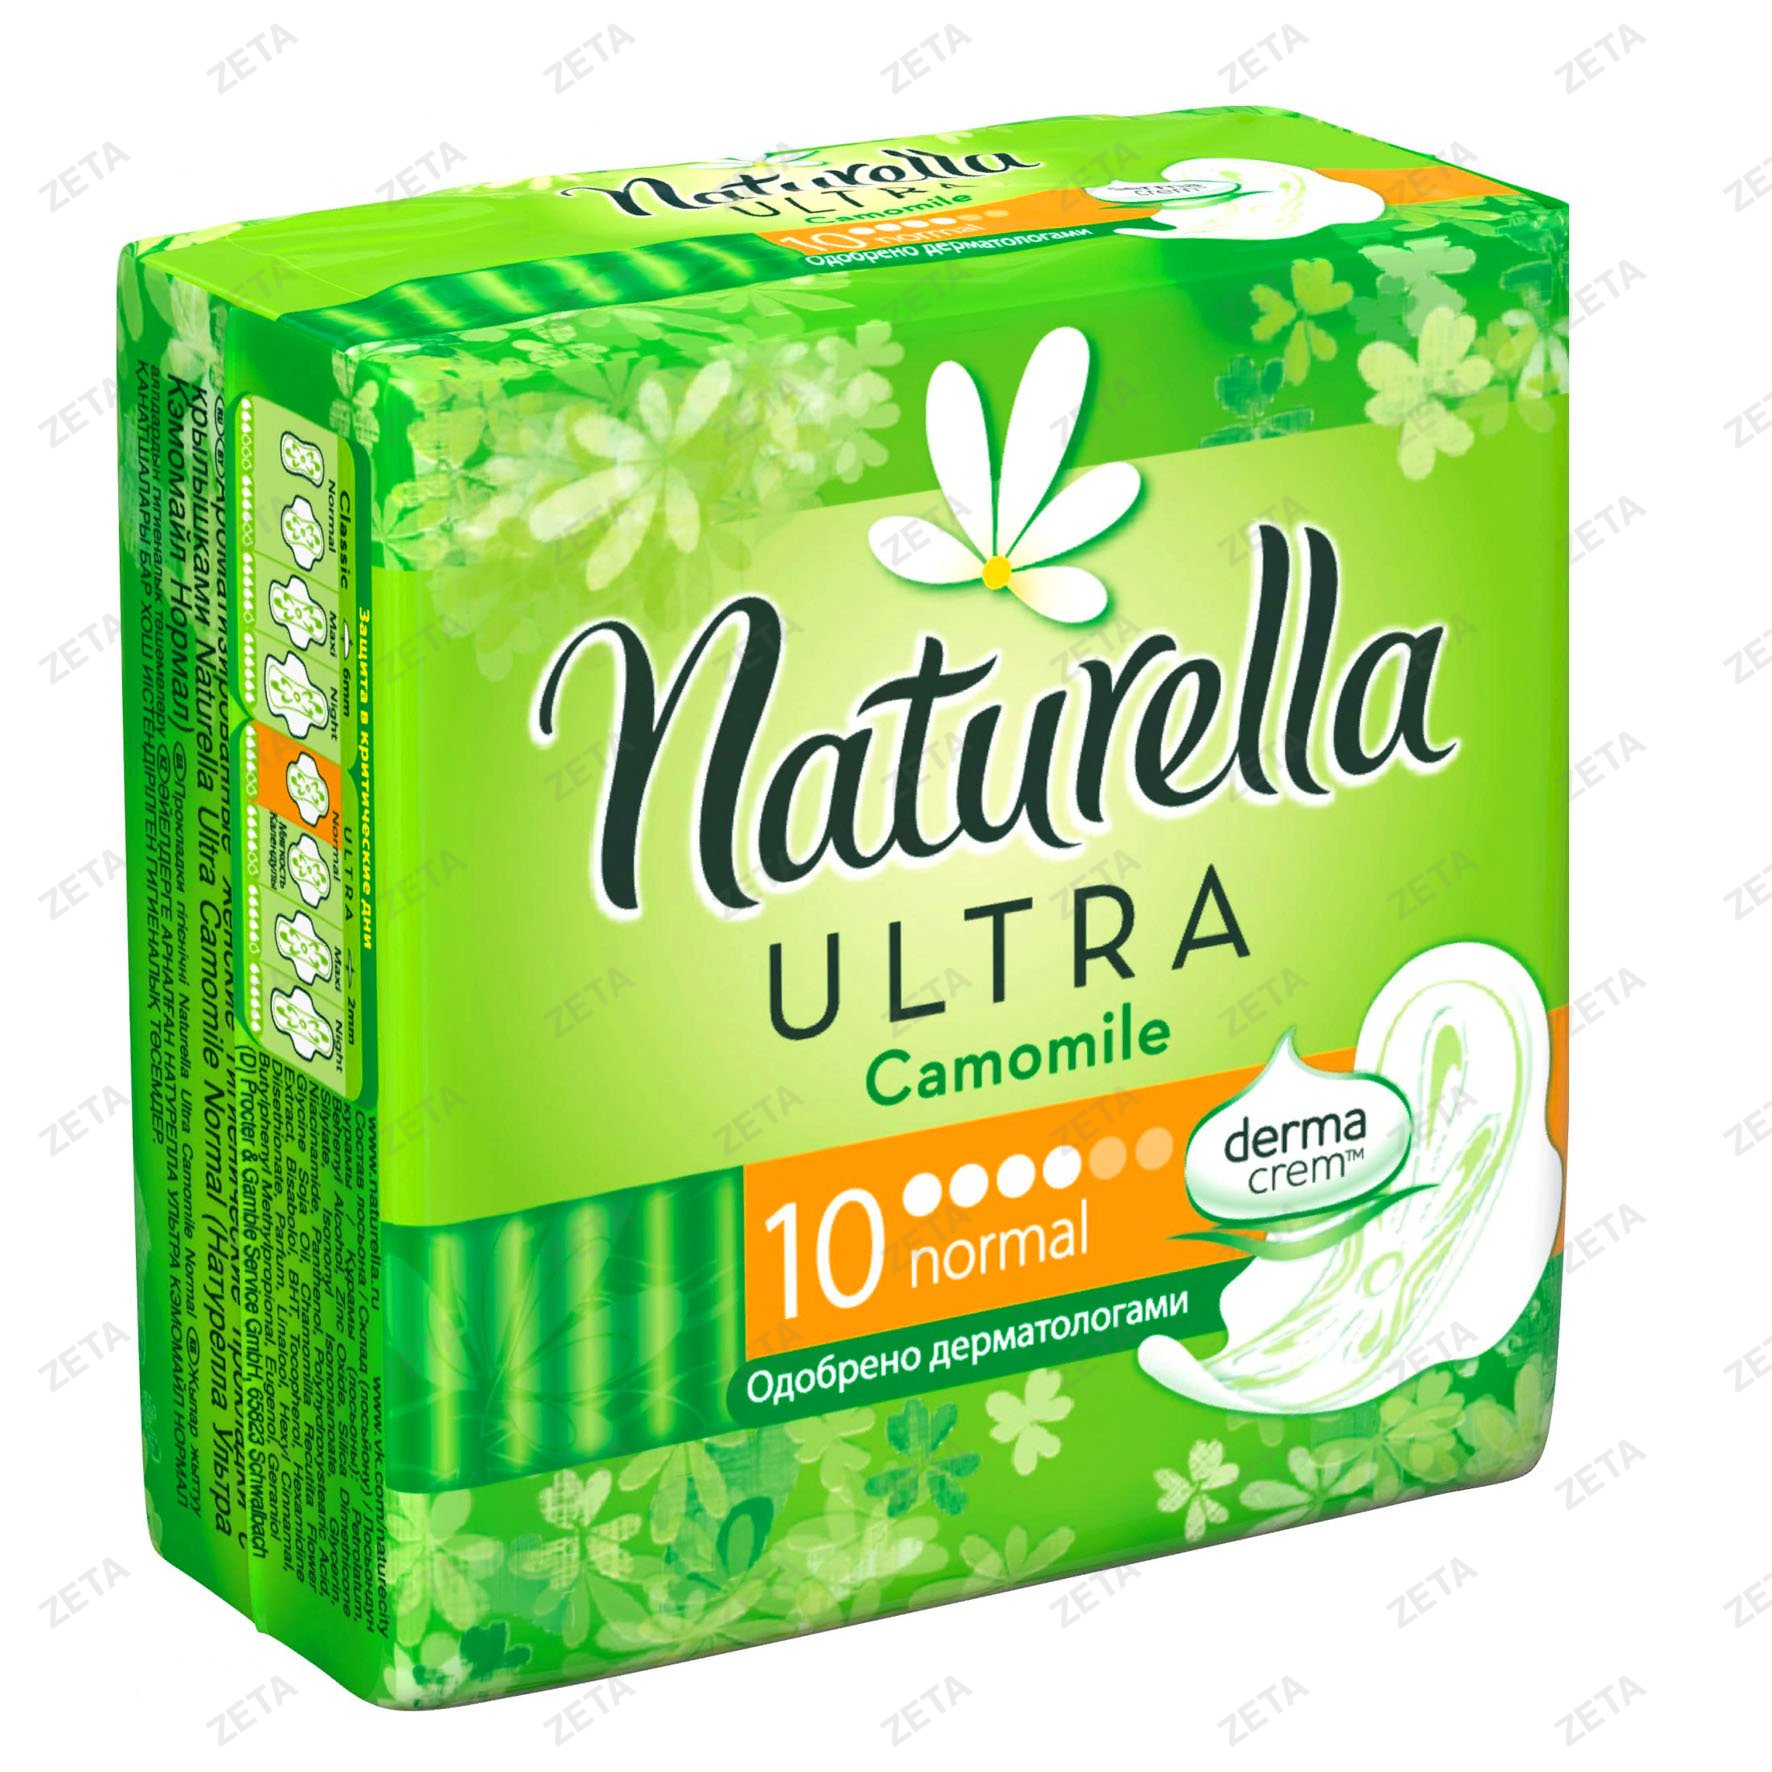 Женские гигиенические прокладки "Naturella Ultra" с крылышами ( Camomile Normal Single) 10 шт.